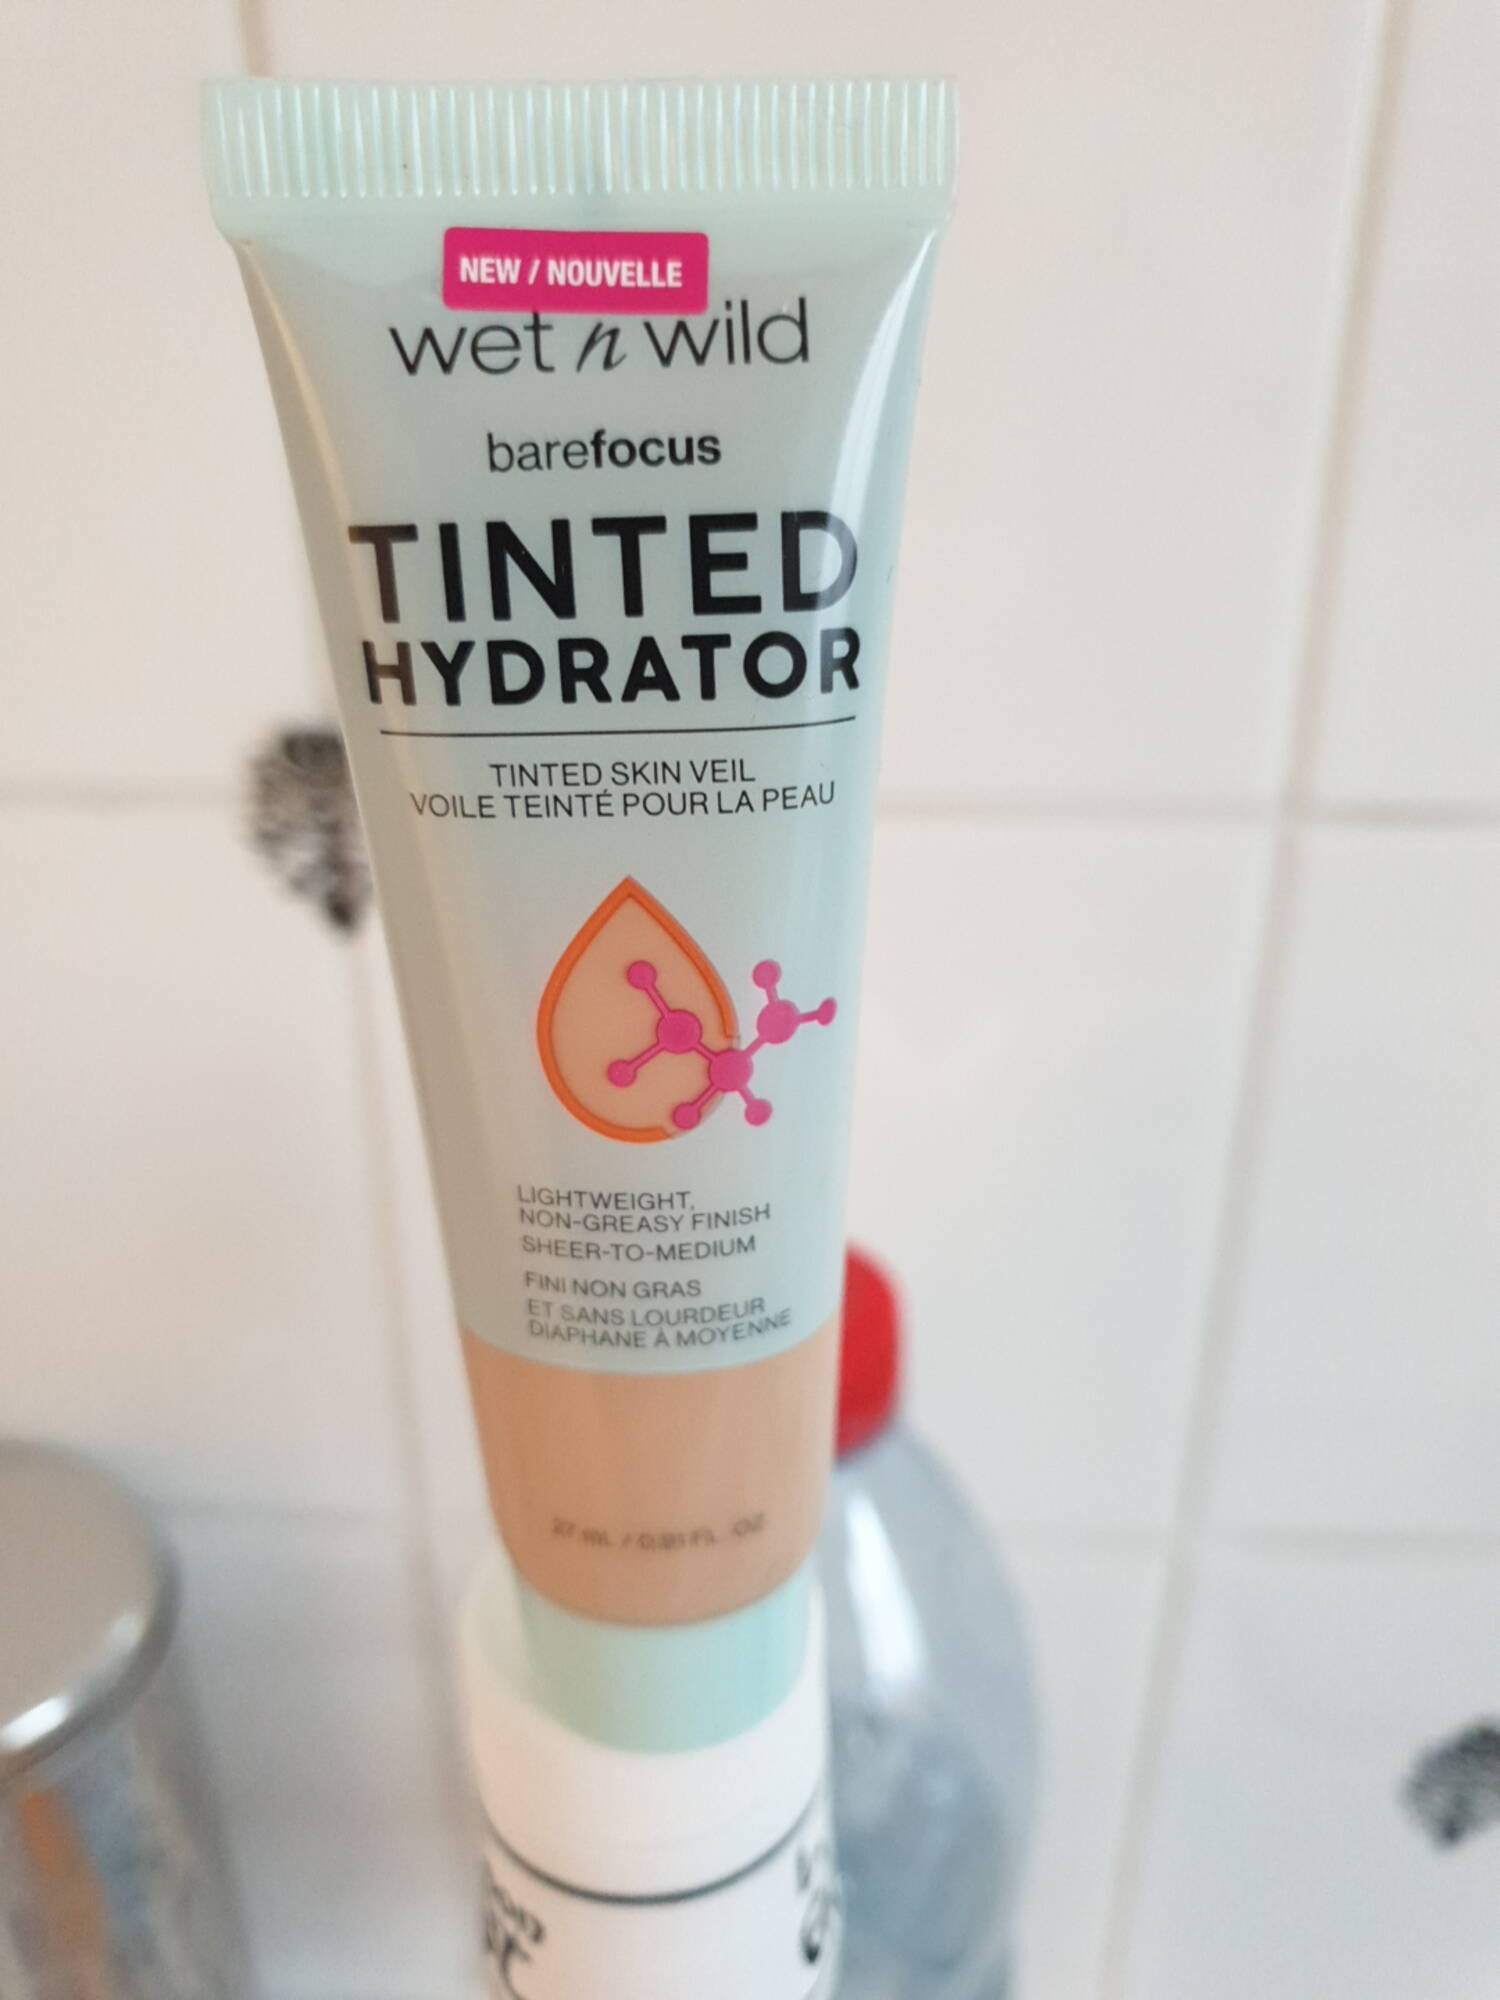 WET N WILD - Tinted hydrator - Voile teinté pour la peau